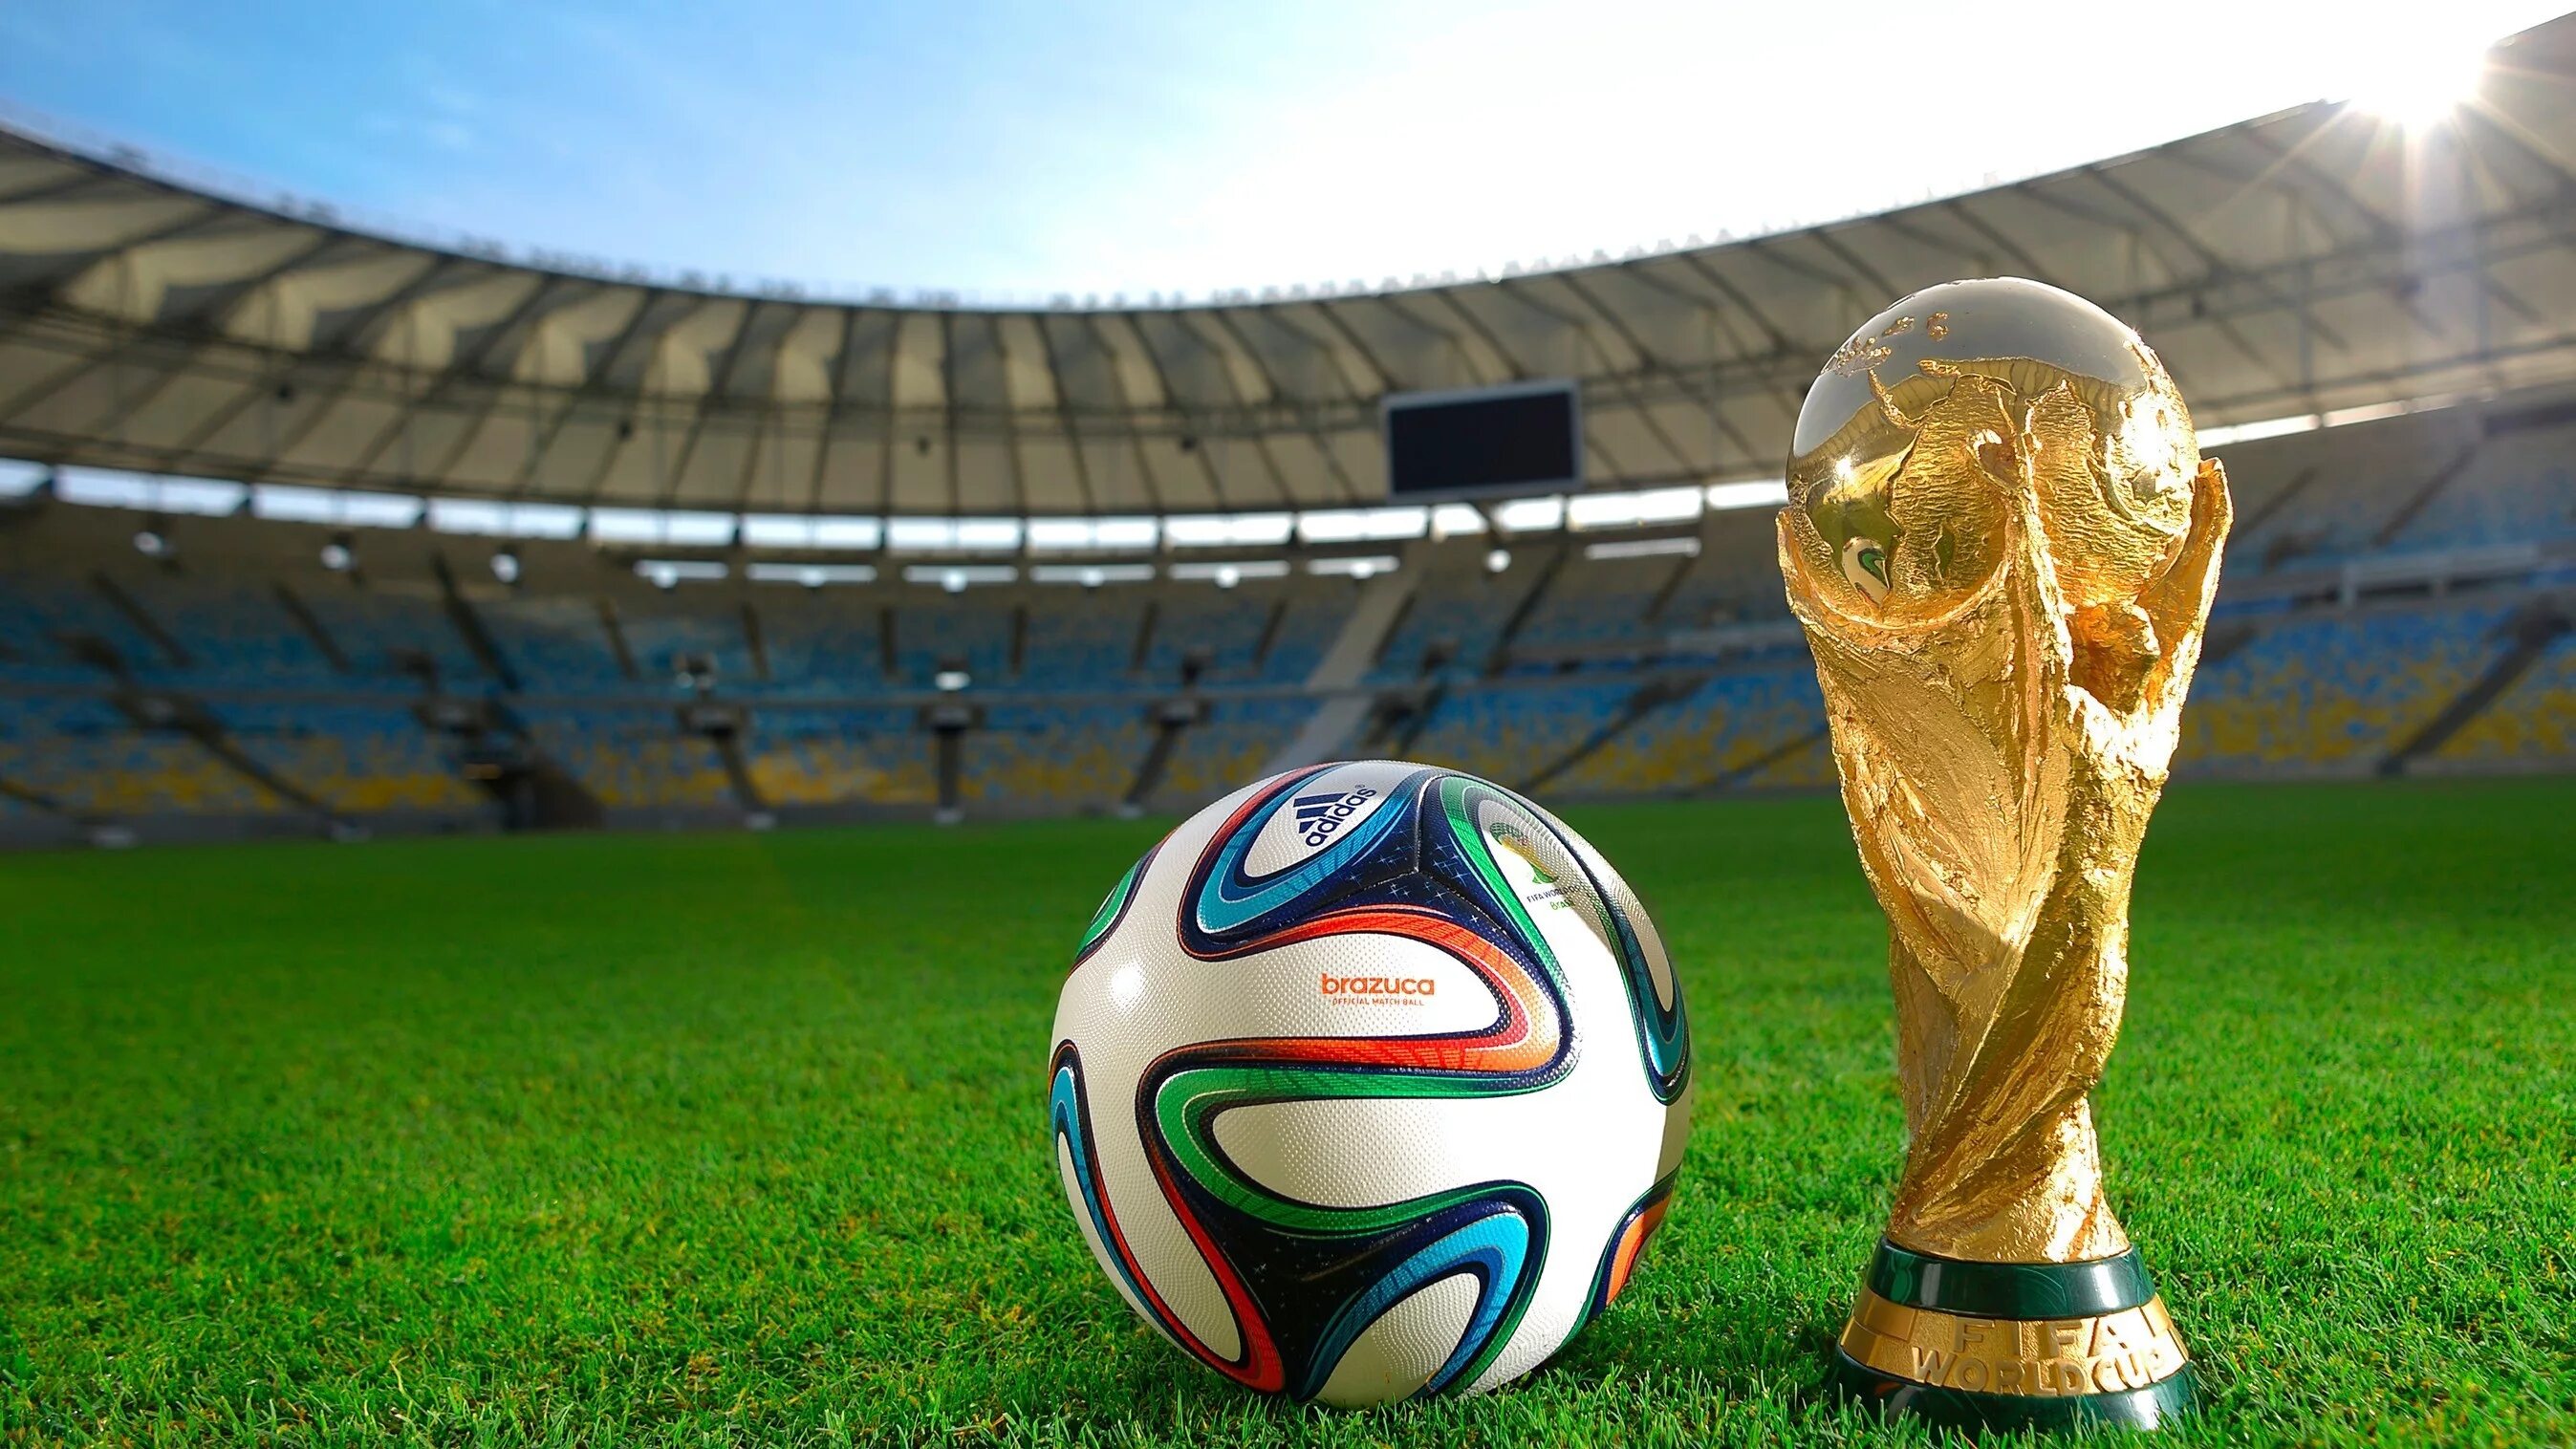 Мир футбола fifa. FIFA World Cup 2022 Кубок. Мяч ЧМ 2026 по футболу. FIFA World Cup Brazil 2014 мяч.